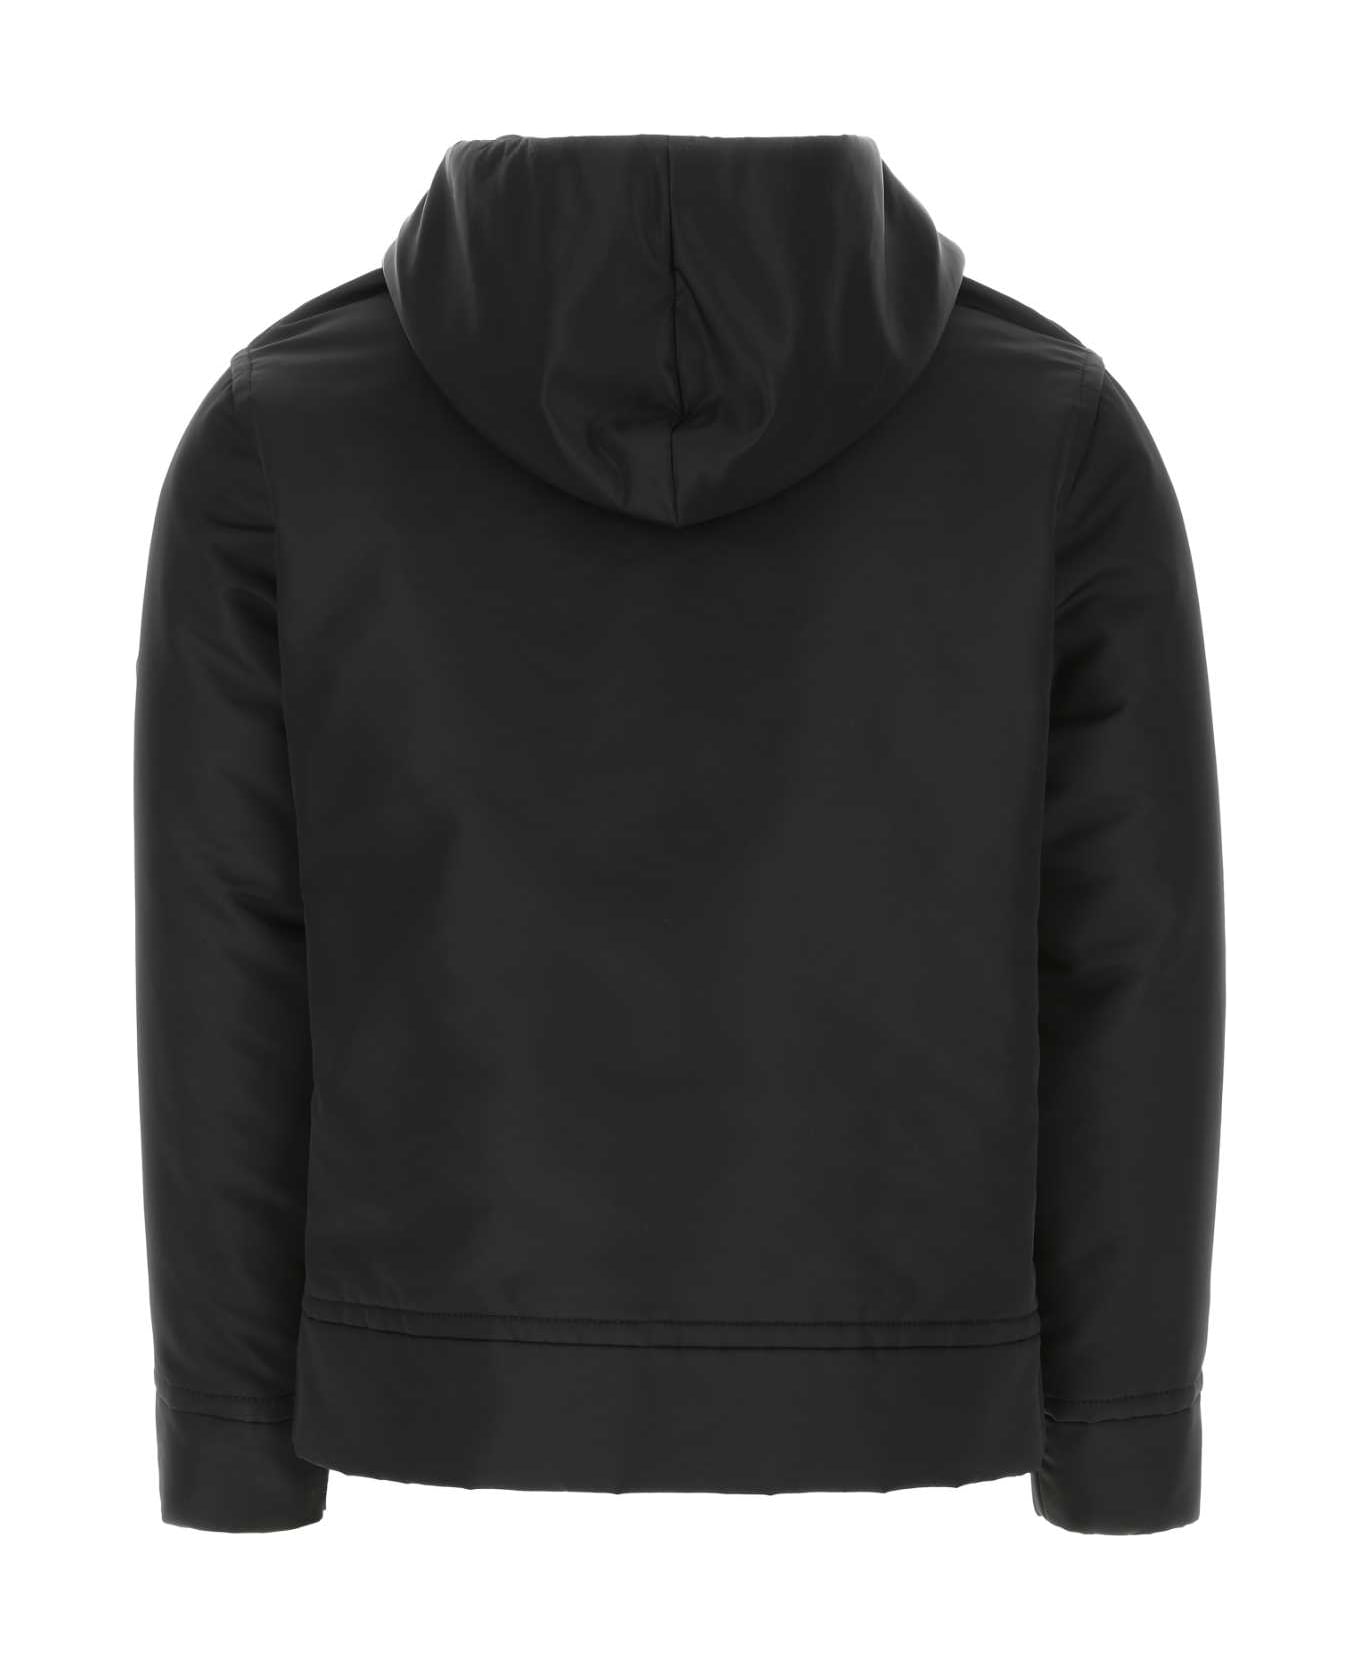 Valentino Garavani Black Nylon Sweatshirt - 0NO